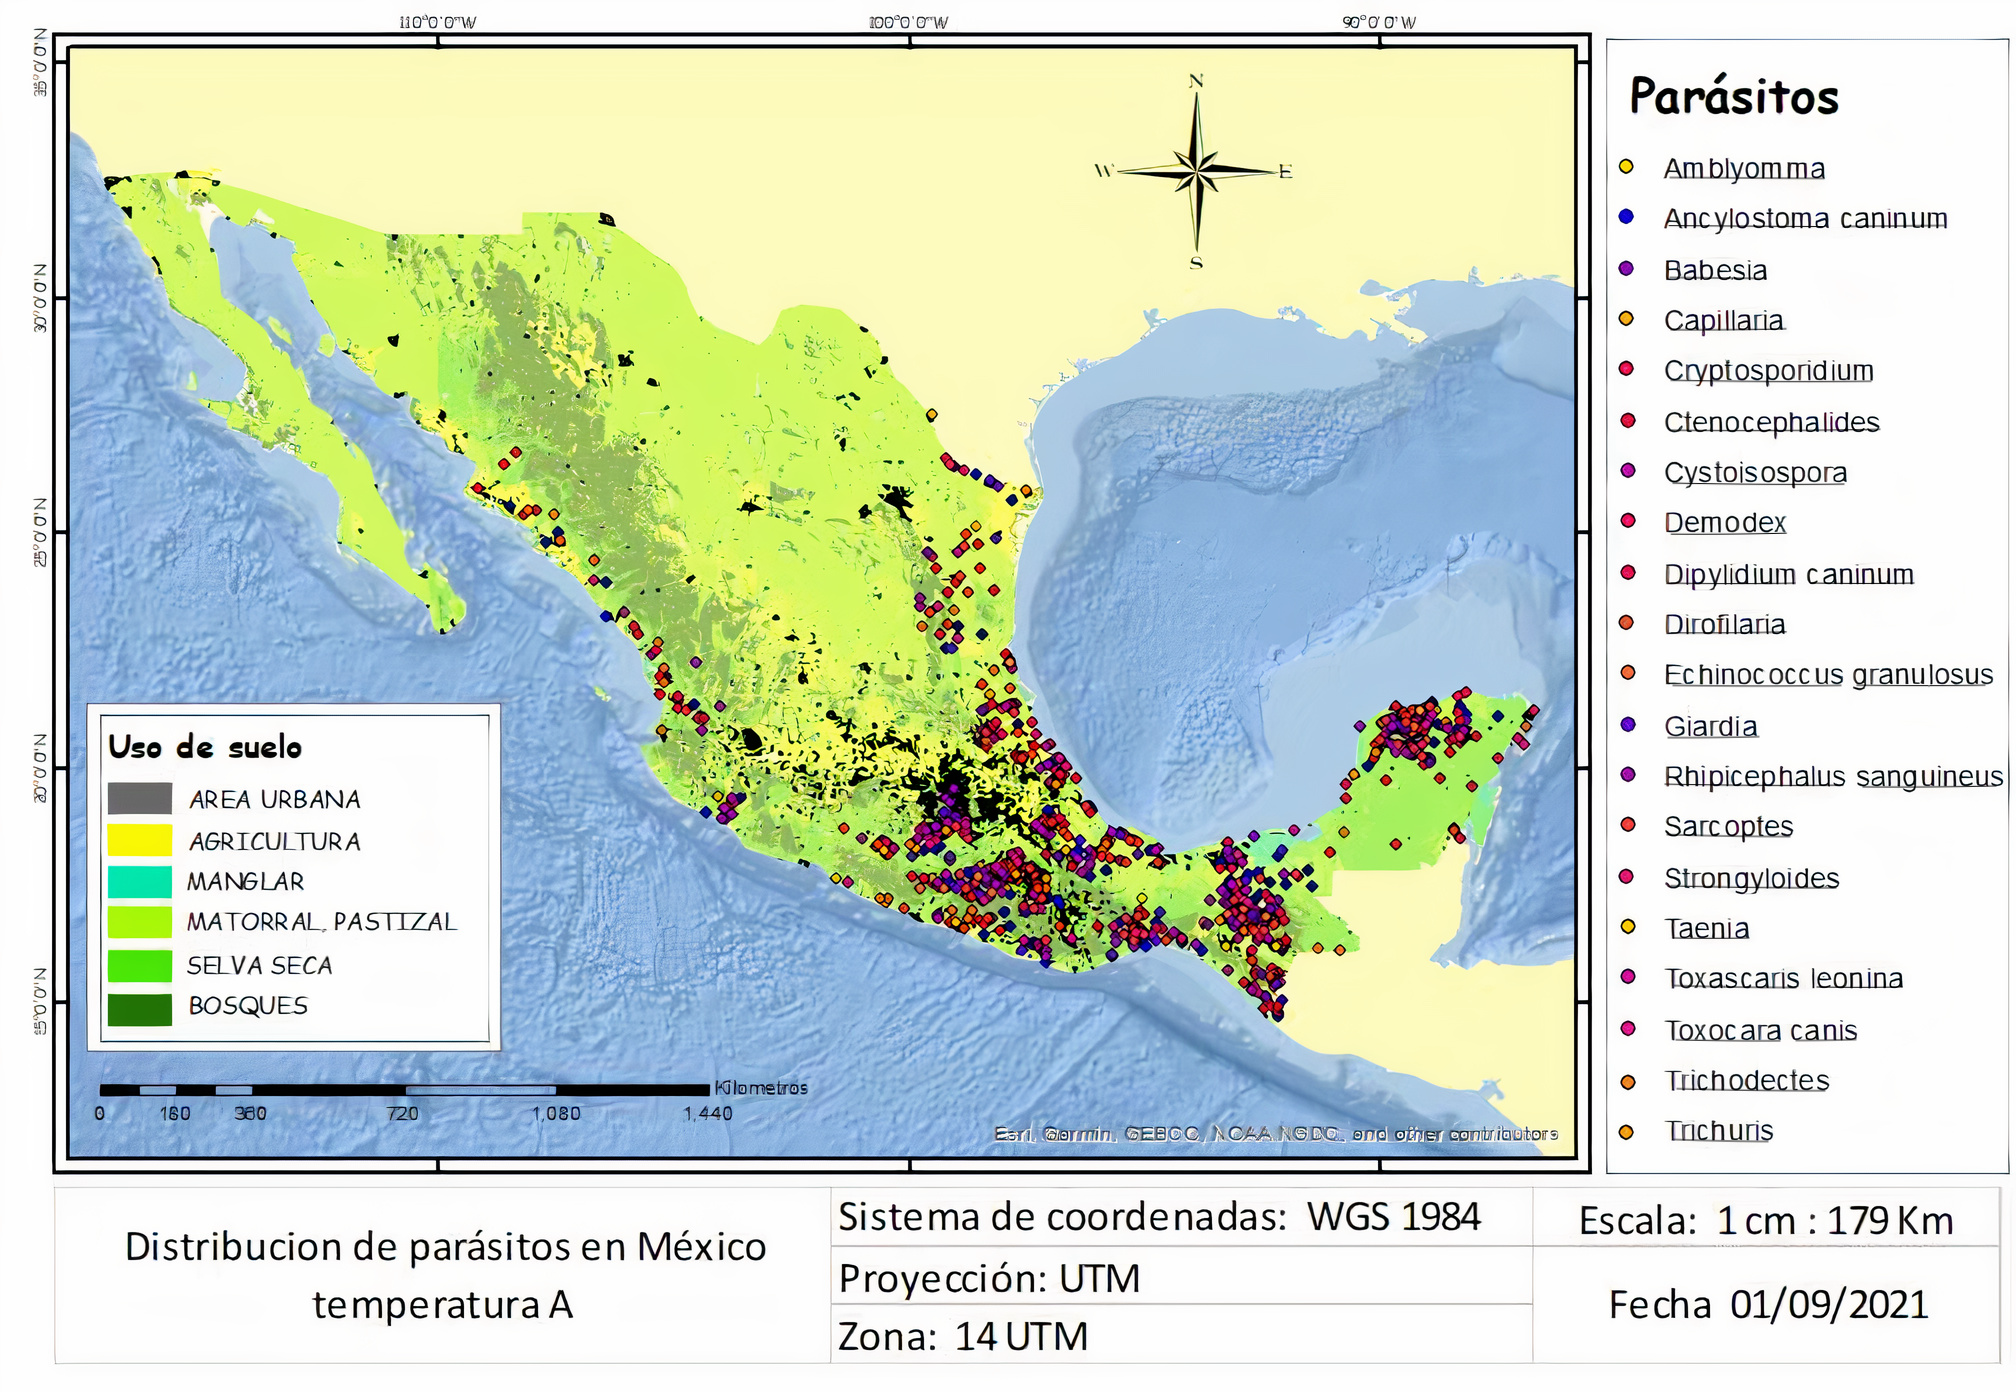 Distribución de parásitos en México, temperatura A.